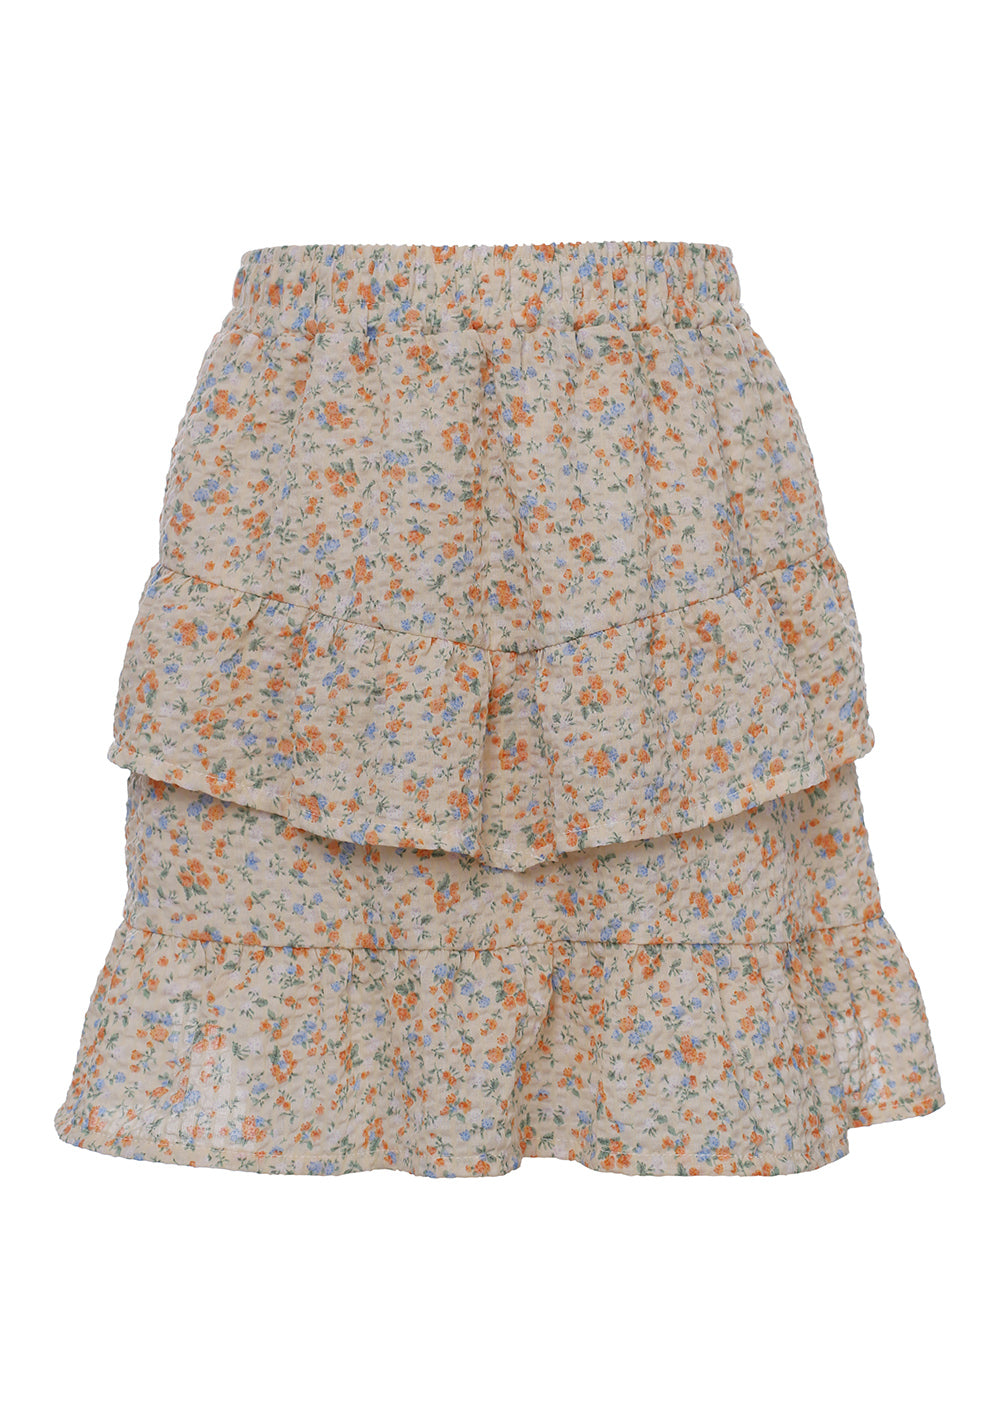 Meisjes Fancy Woven Skirt Mini Flower van LOOXS Little in de kleur mini flower in maat 128.